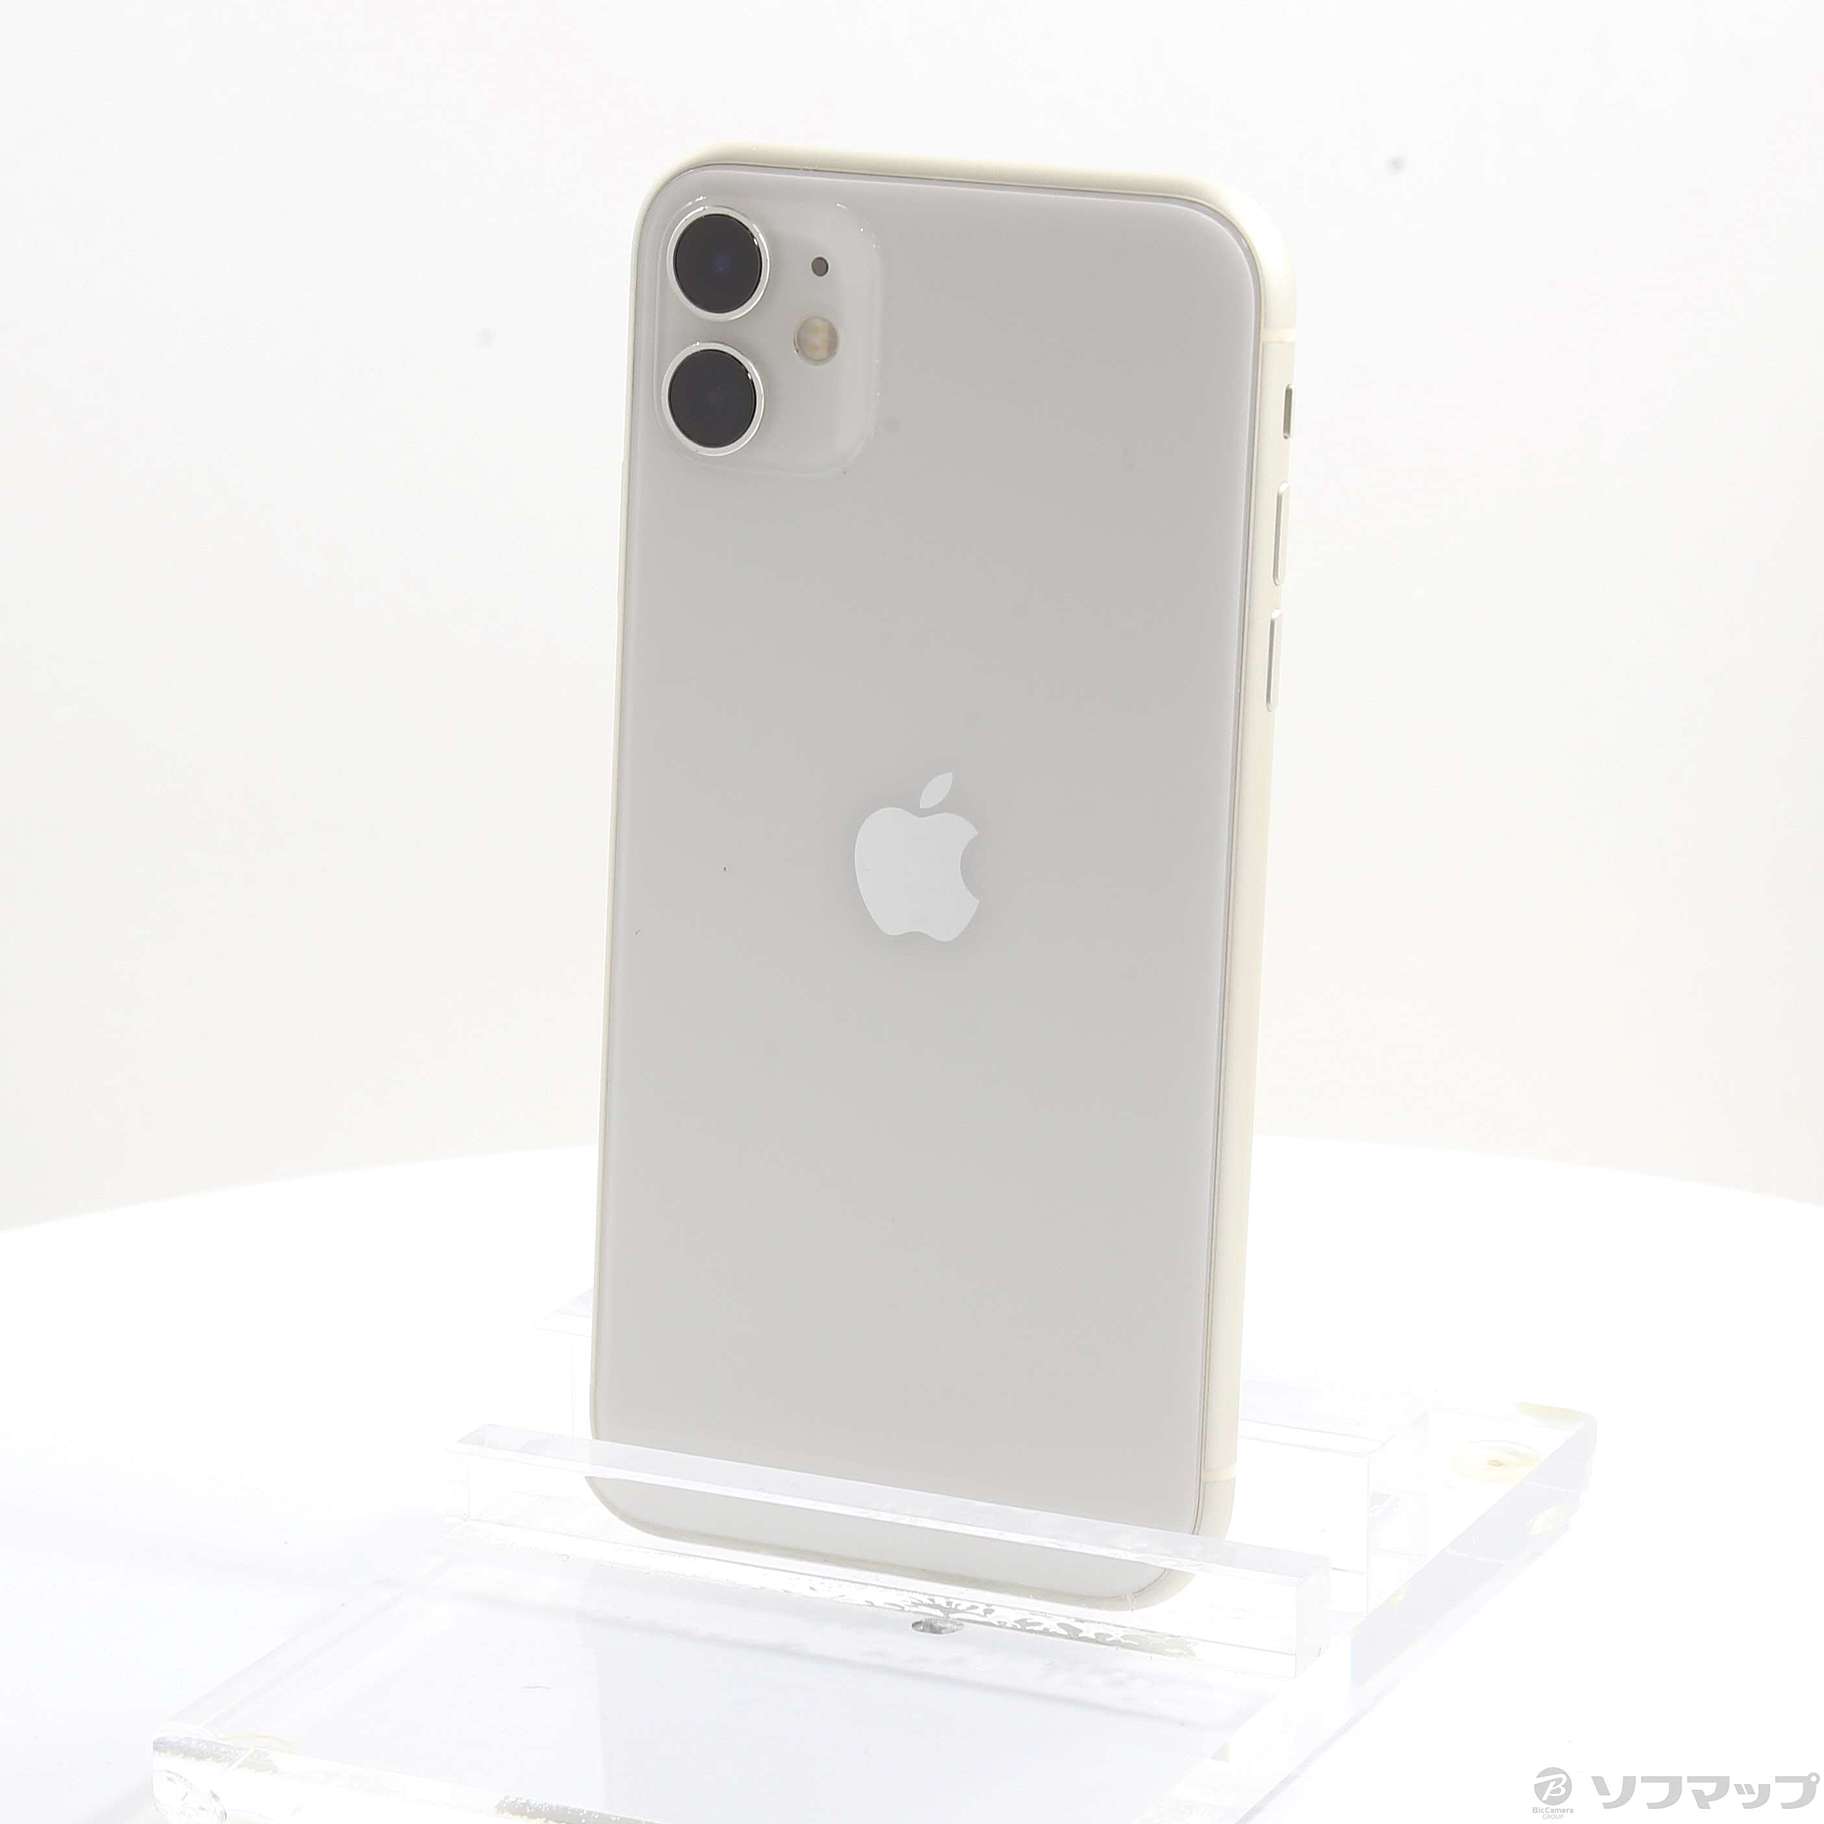 【未使用】SIMフリー iPhone11 256GB white ホワイト